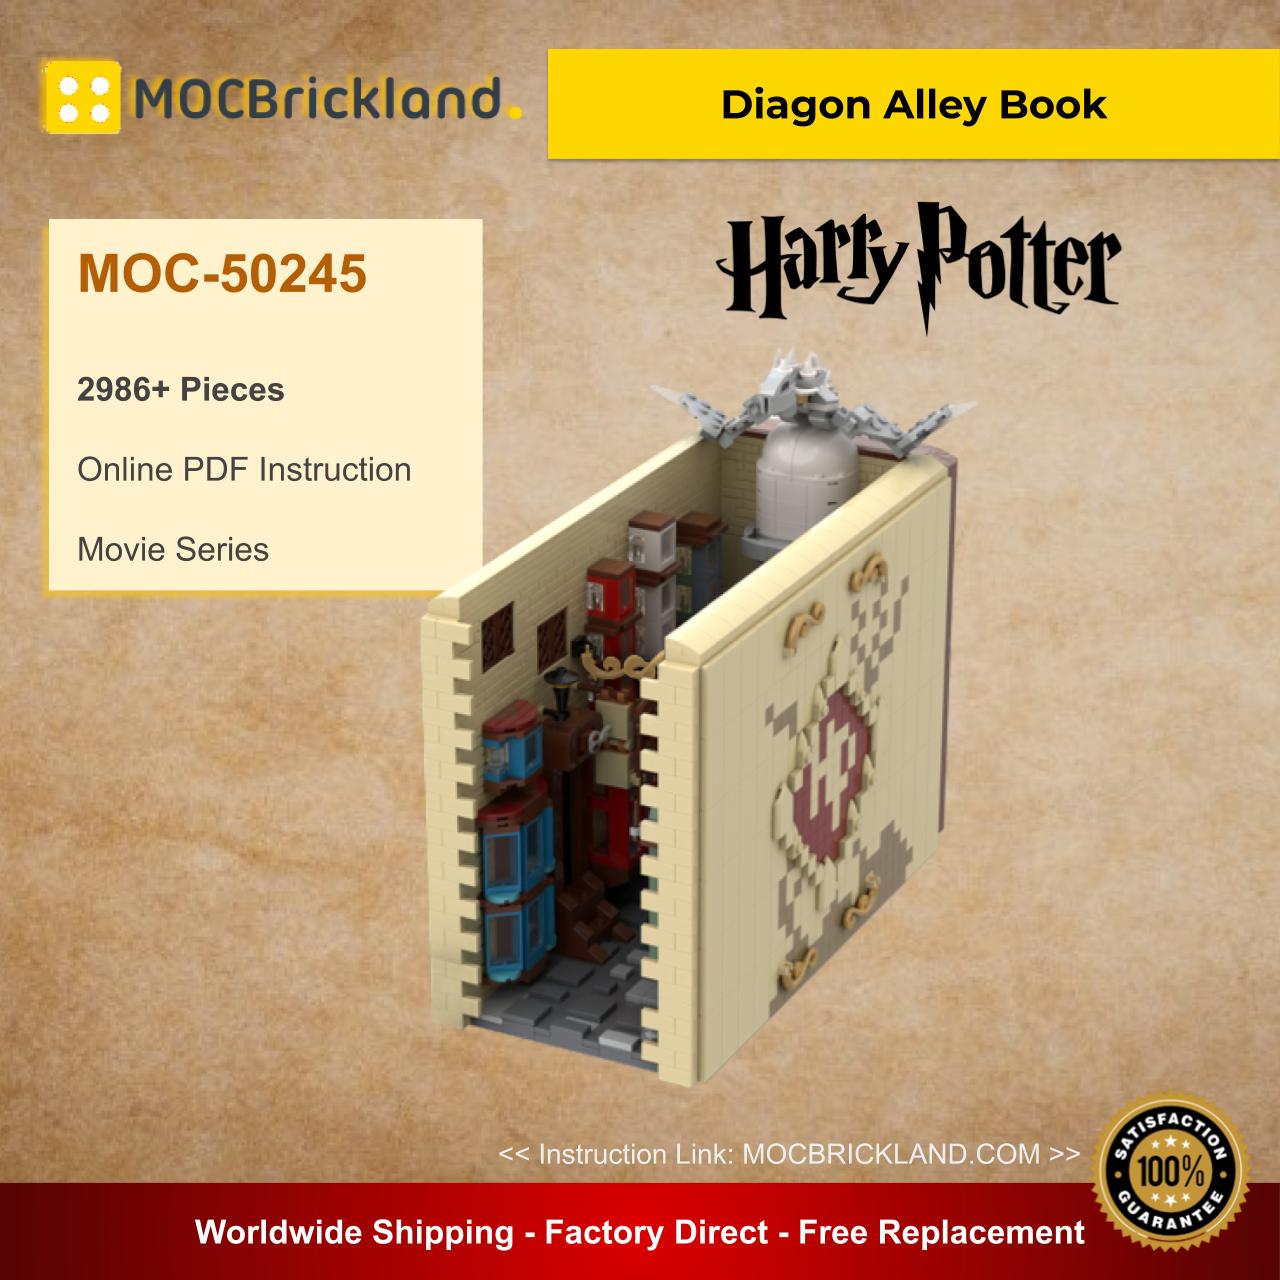 MOCBRICKLAND MOC-50245 DIagon Alley Book